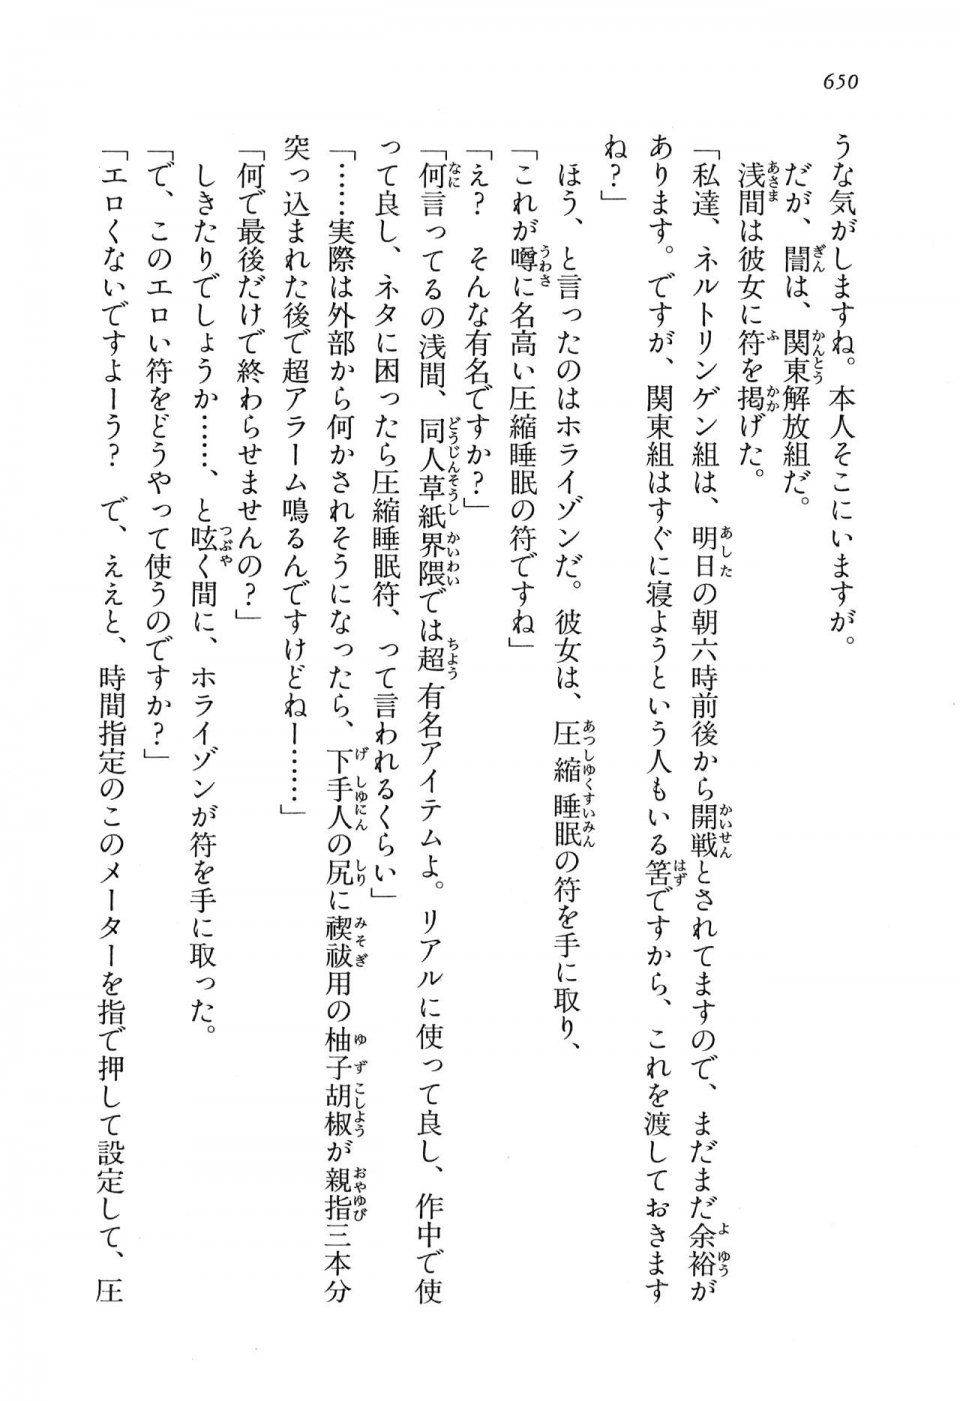 Kyoukai Senjou no Horizon LN Vol 16(7A) - Photo #650